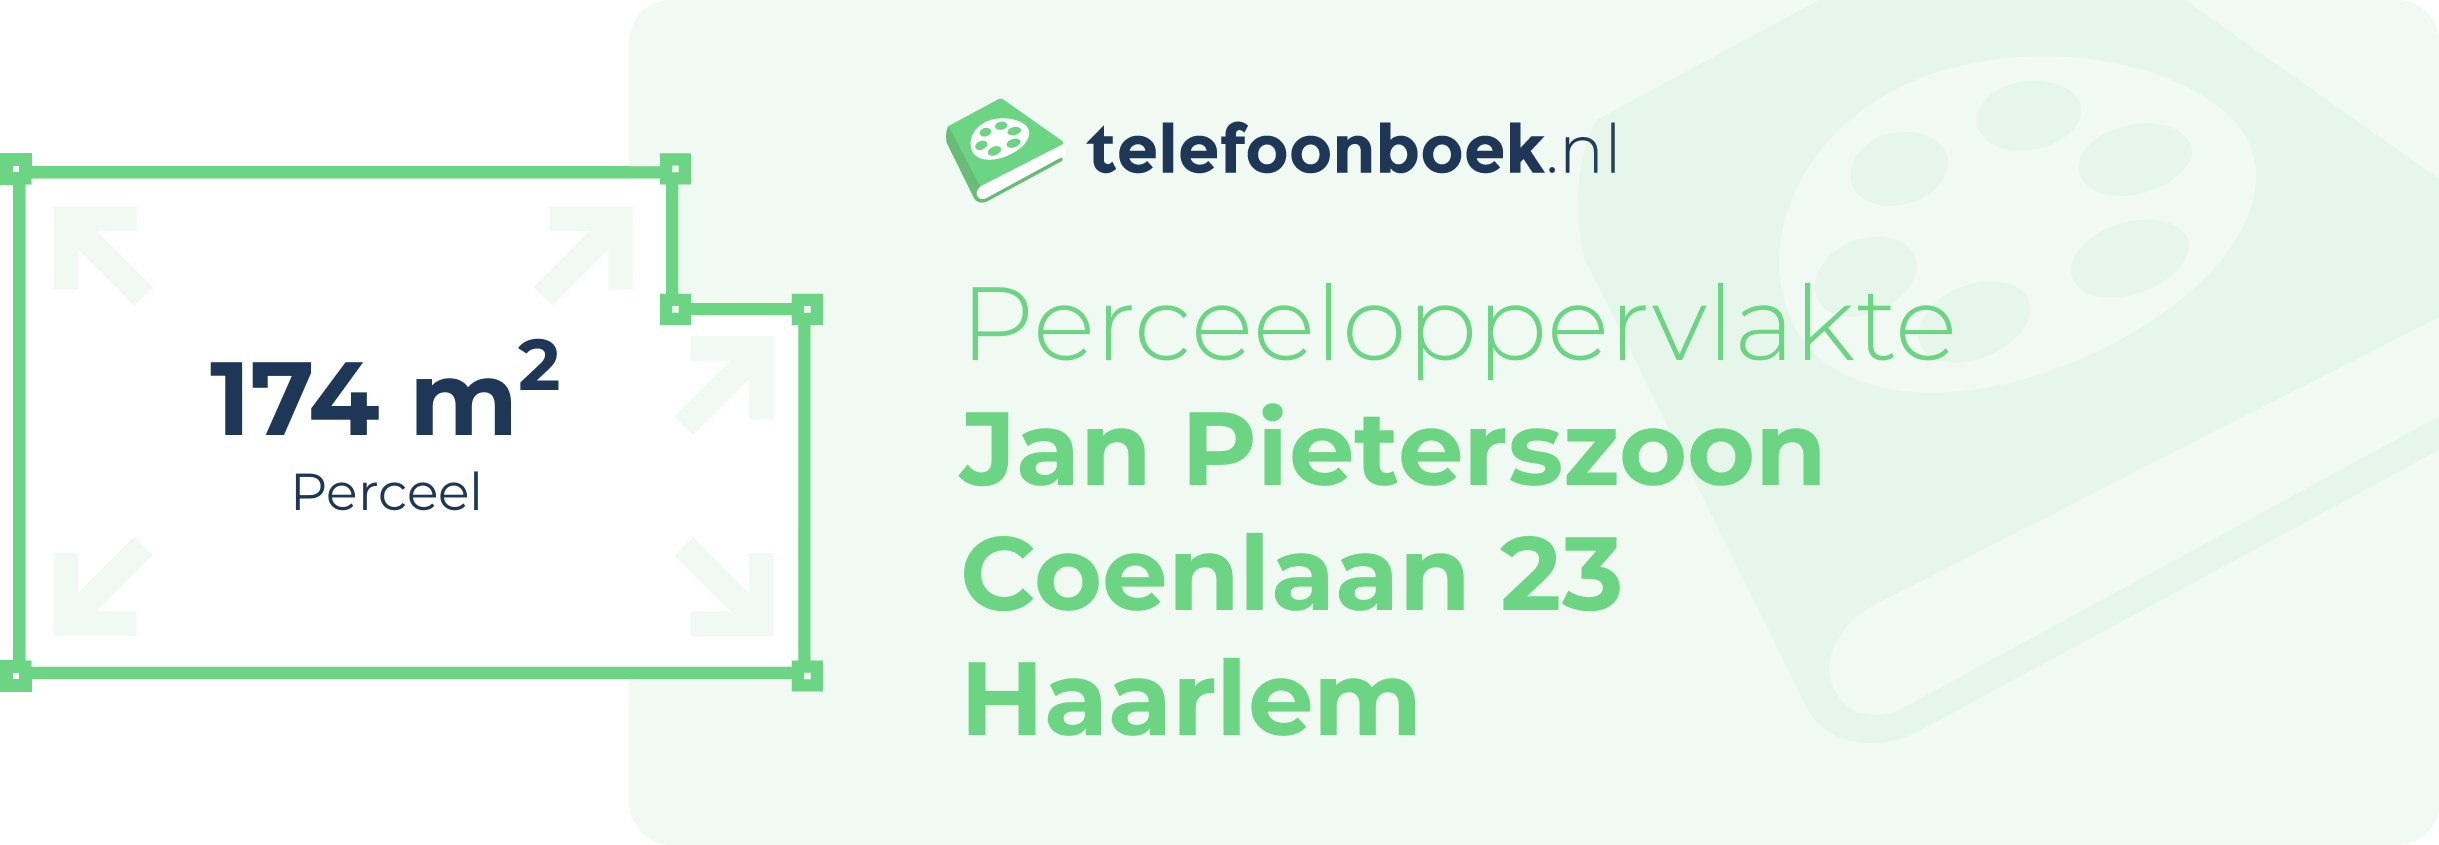 Perceeloppervlakte Jan Pieterszoon Coenlaan 23 Haarlem